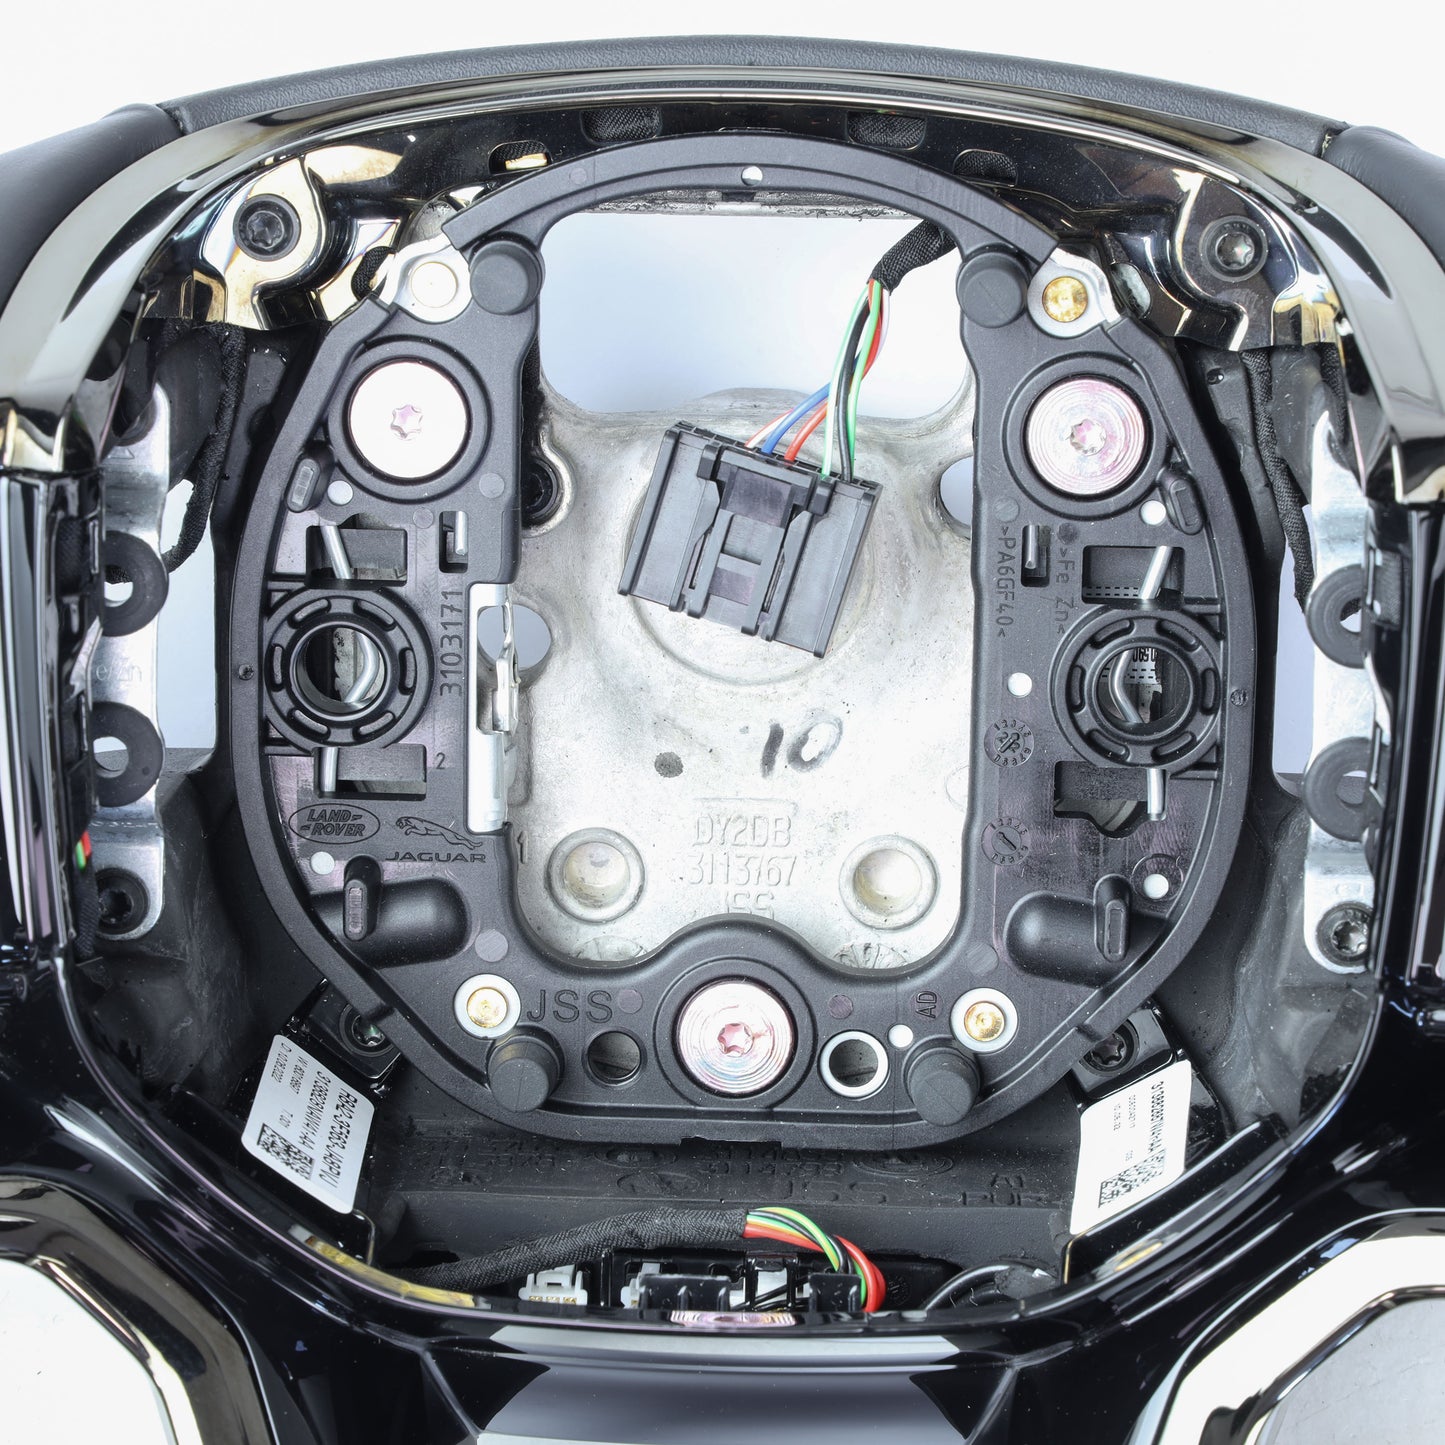 Steering Wheel - NON Heated - Ebony Leather + Moonlight Bezel for Range Rover Velar 2021+